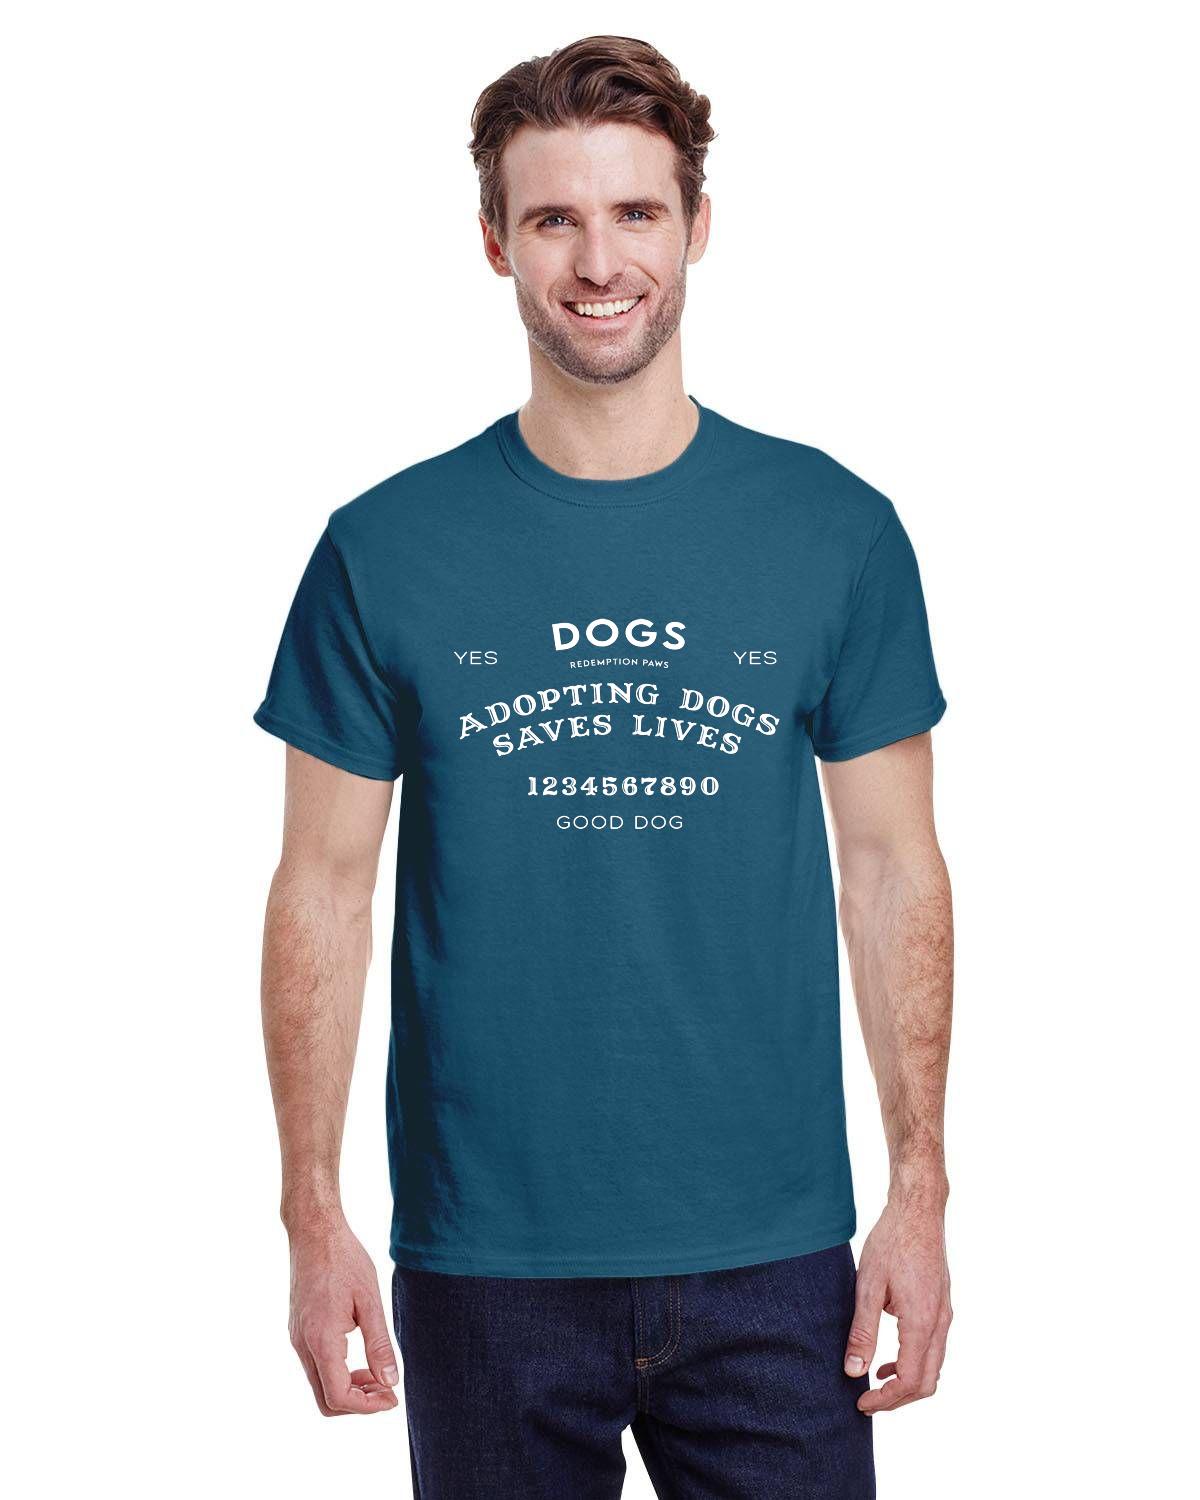 Adopting Dogs Saves Lives Ouija T-shirt